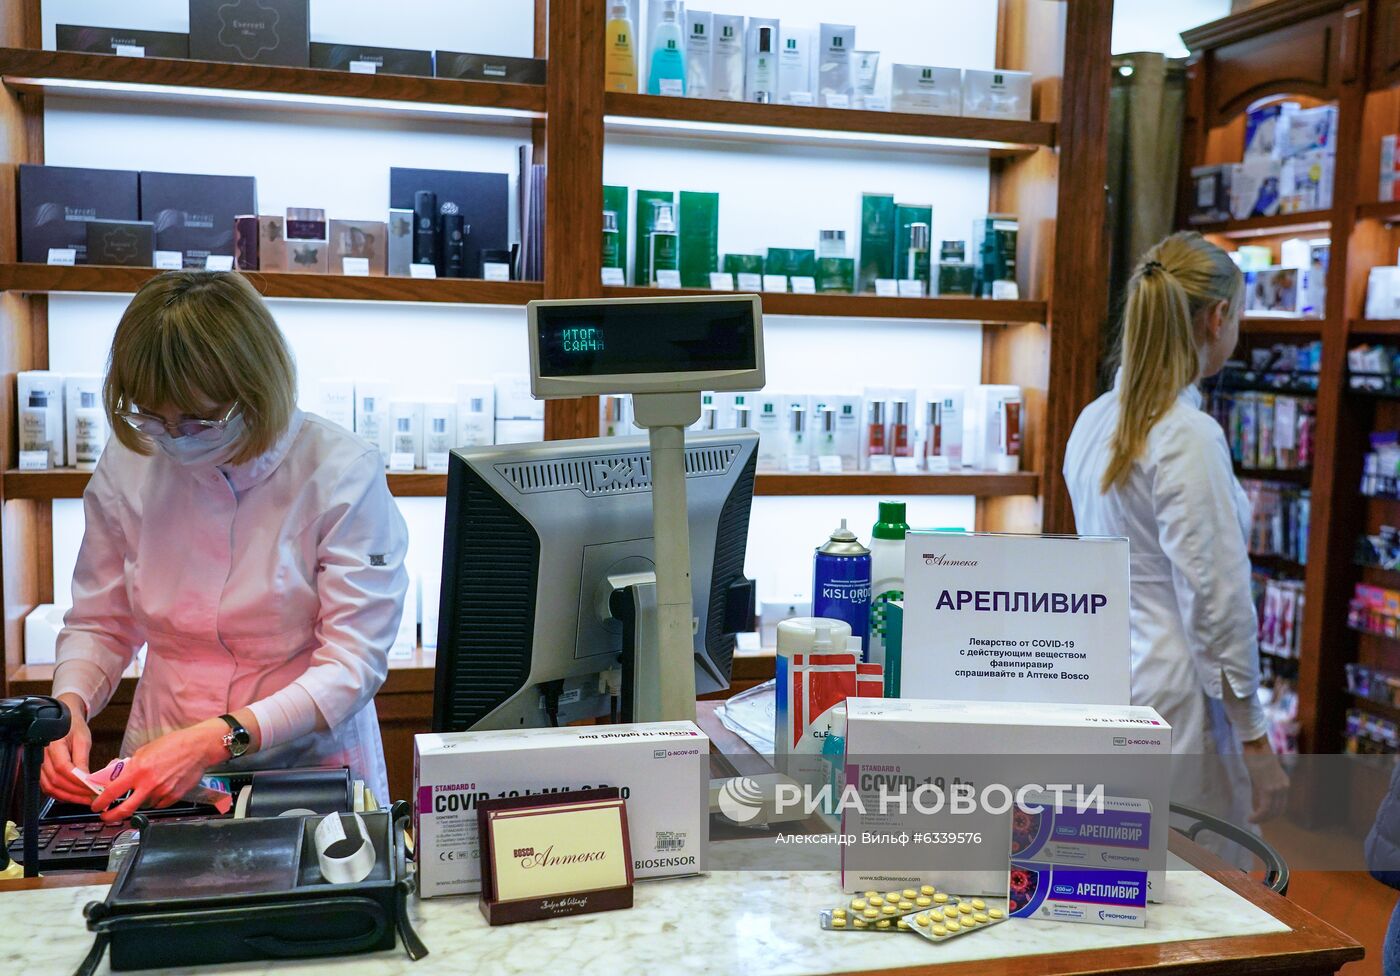 Продажа препарата от COVID-19 "Коронавир" в Москве 